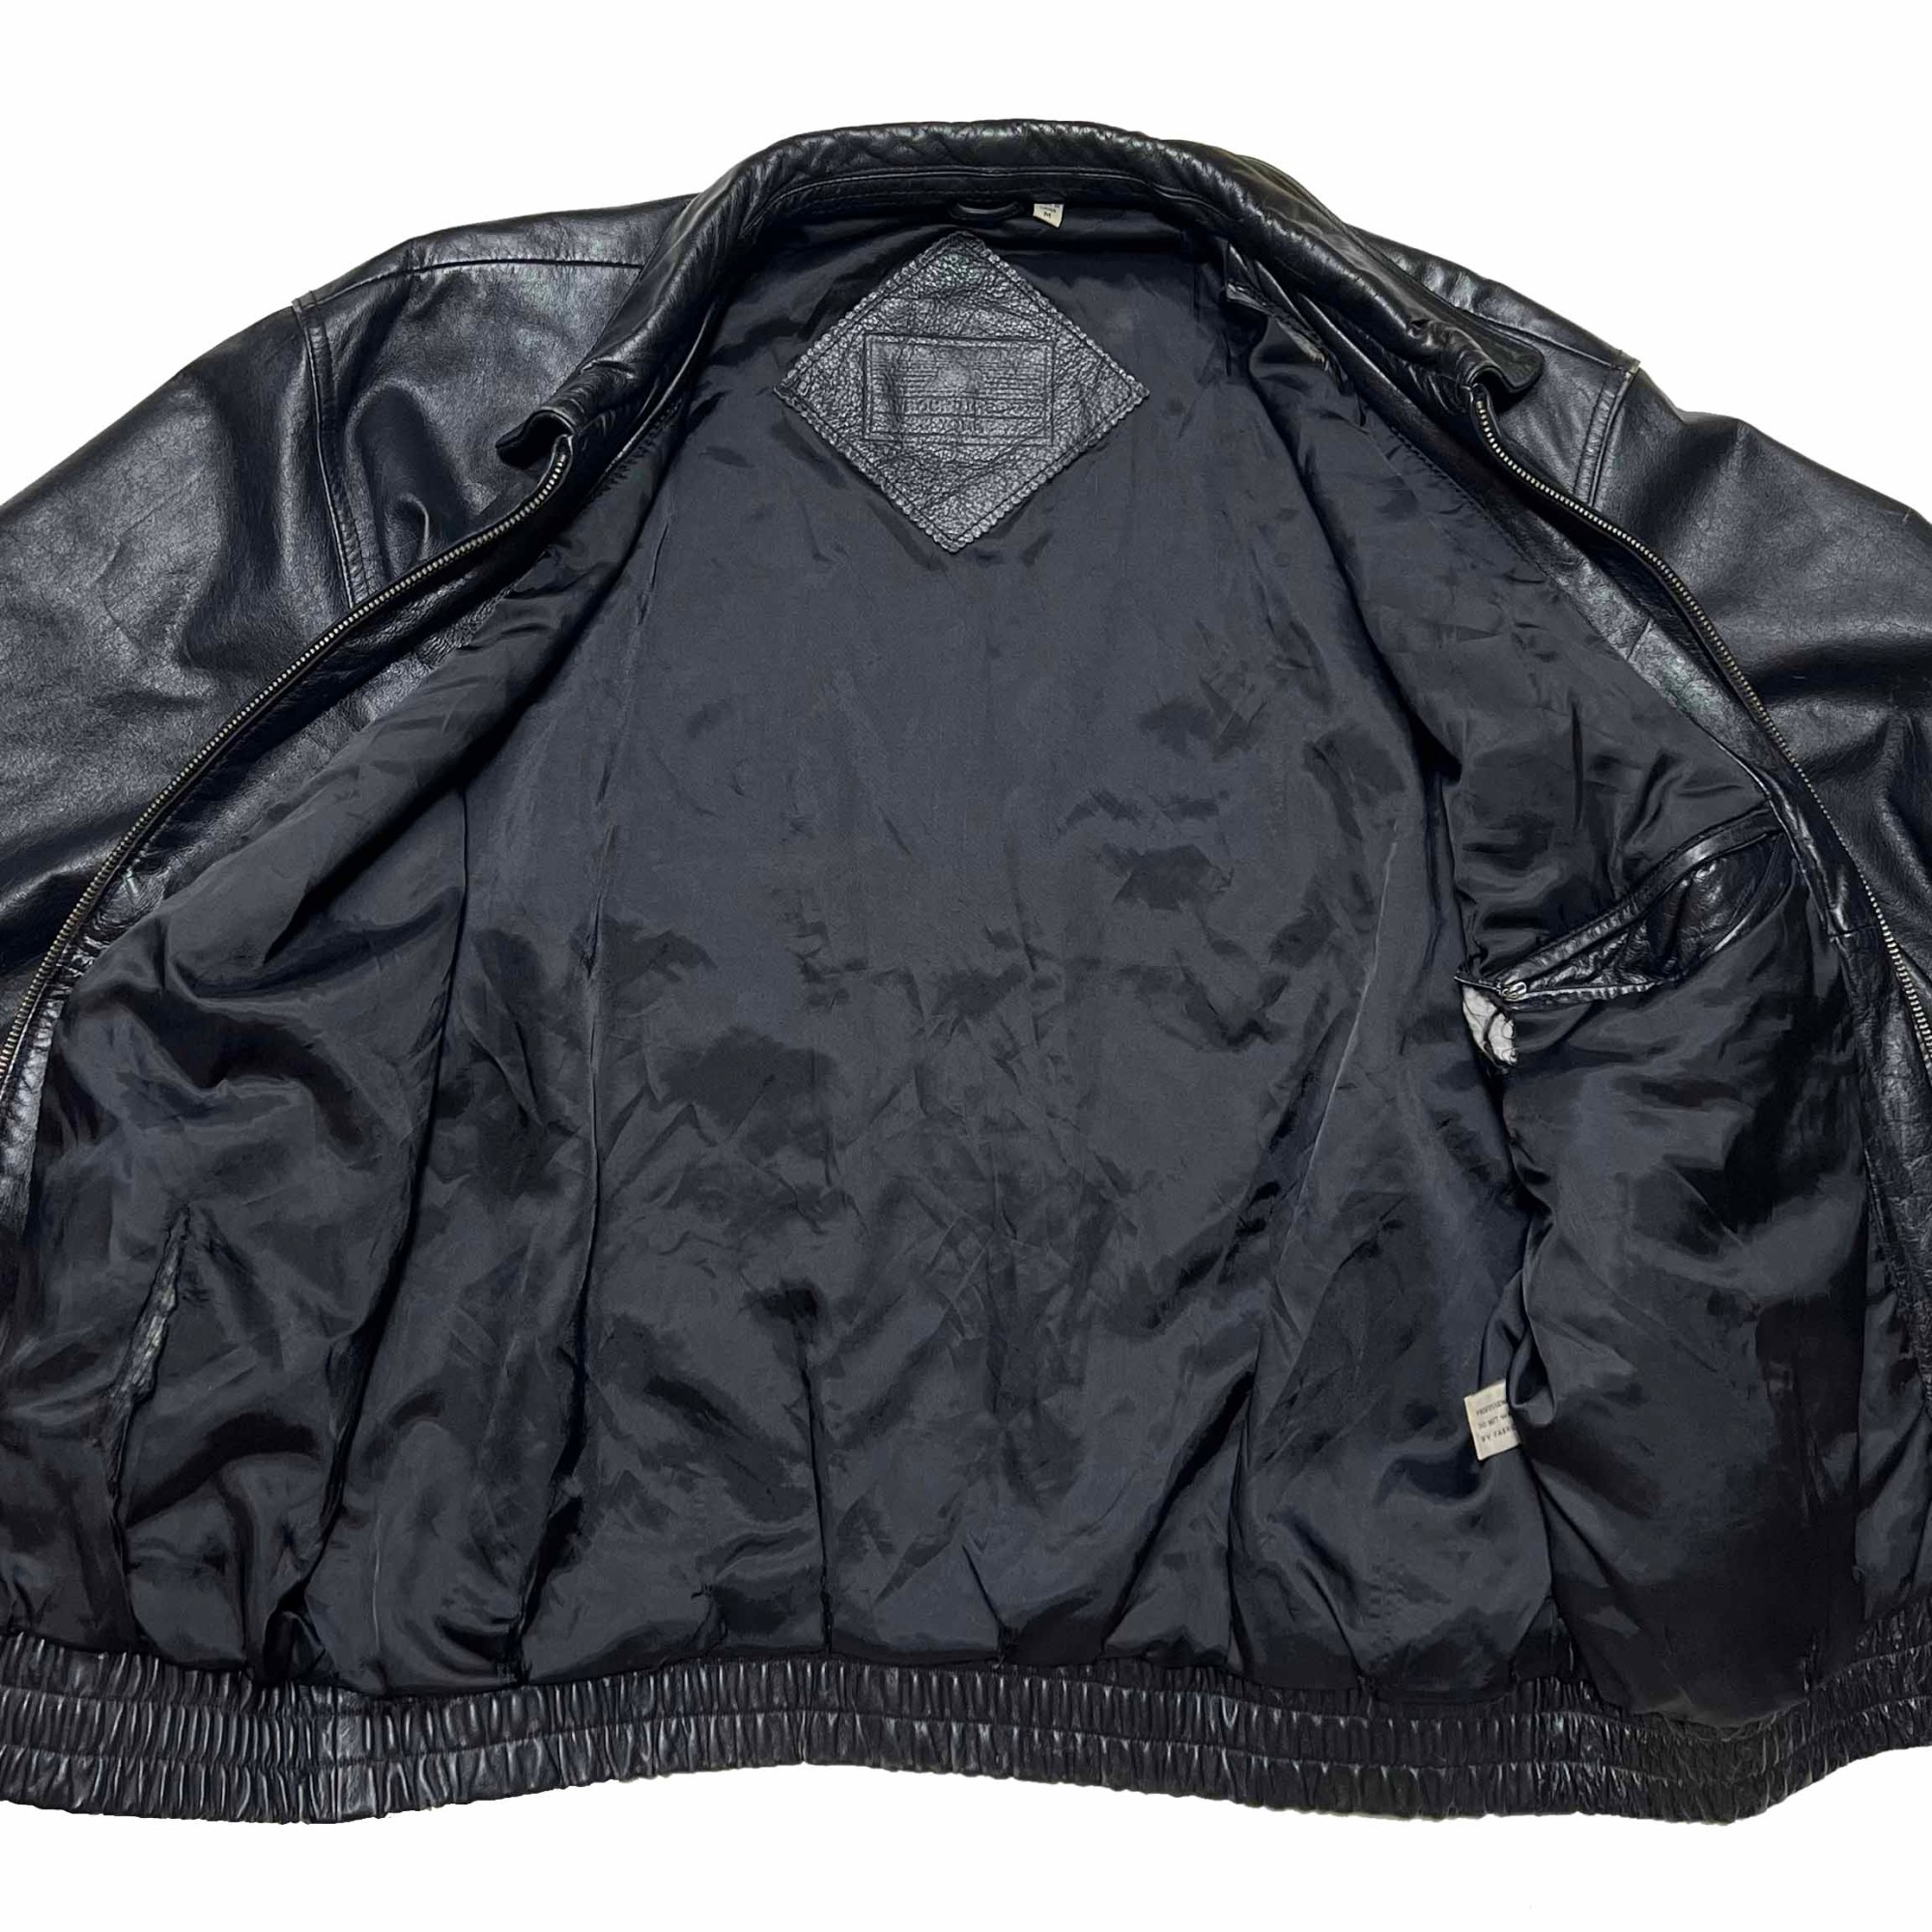 季節のおすすめ商品 90s 古着 KNIGHTSBRIDGE ライダースブルゾン ボンバージャケット